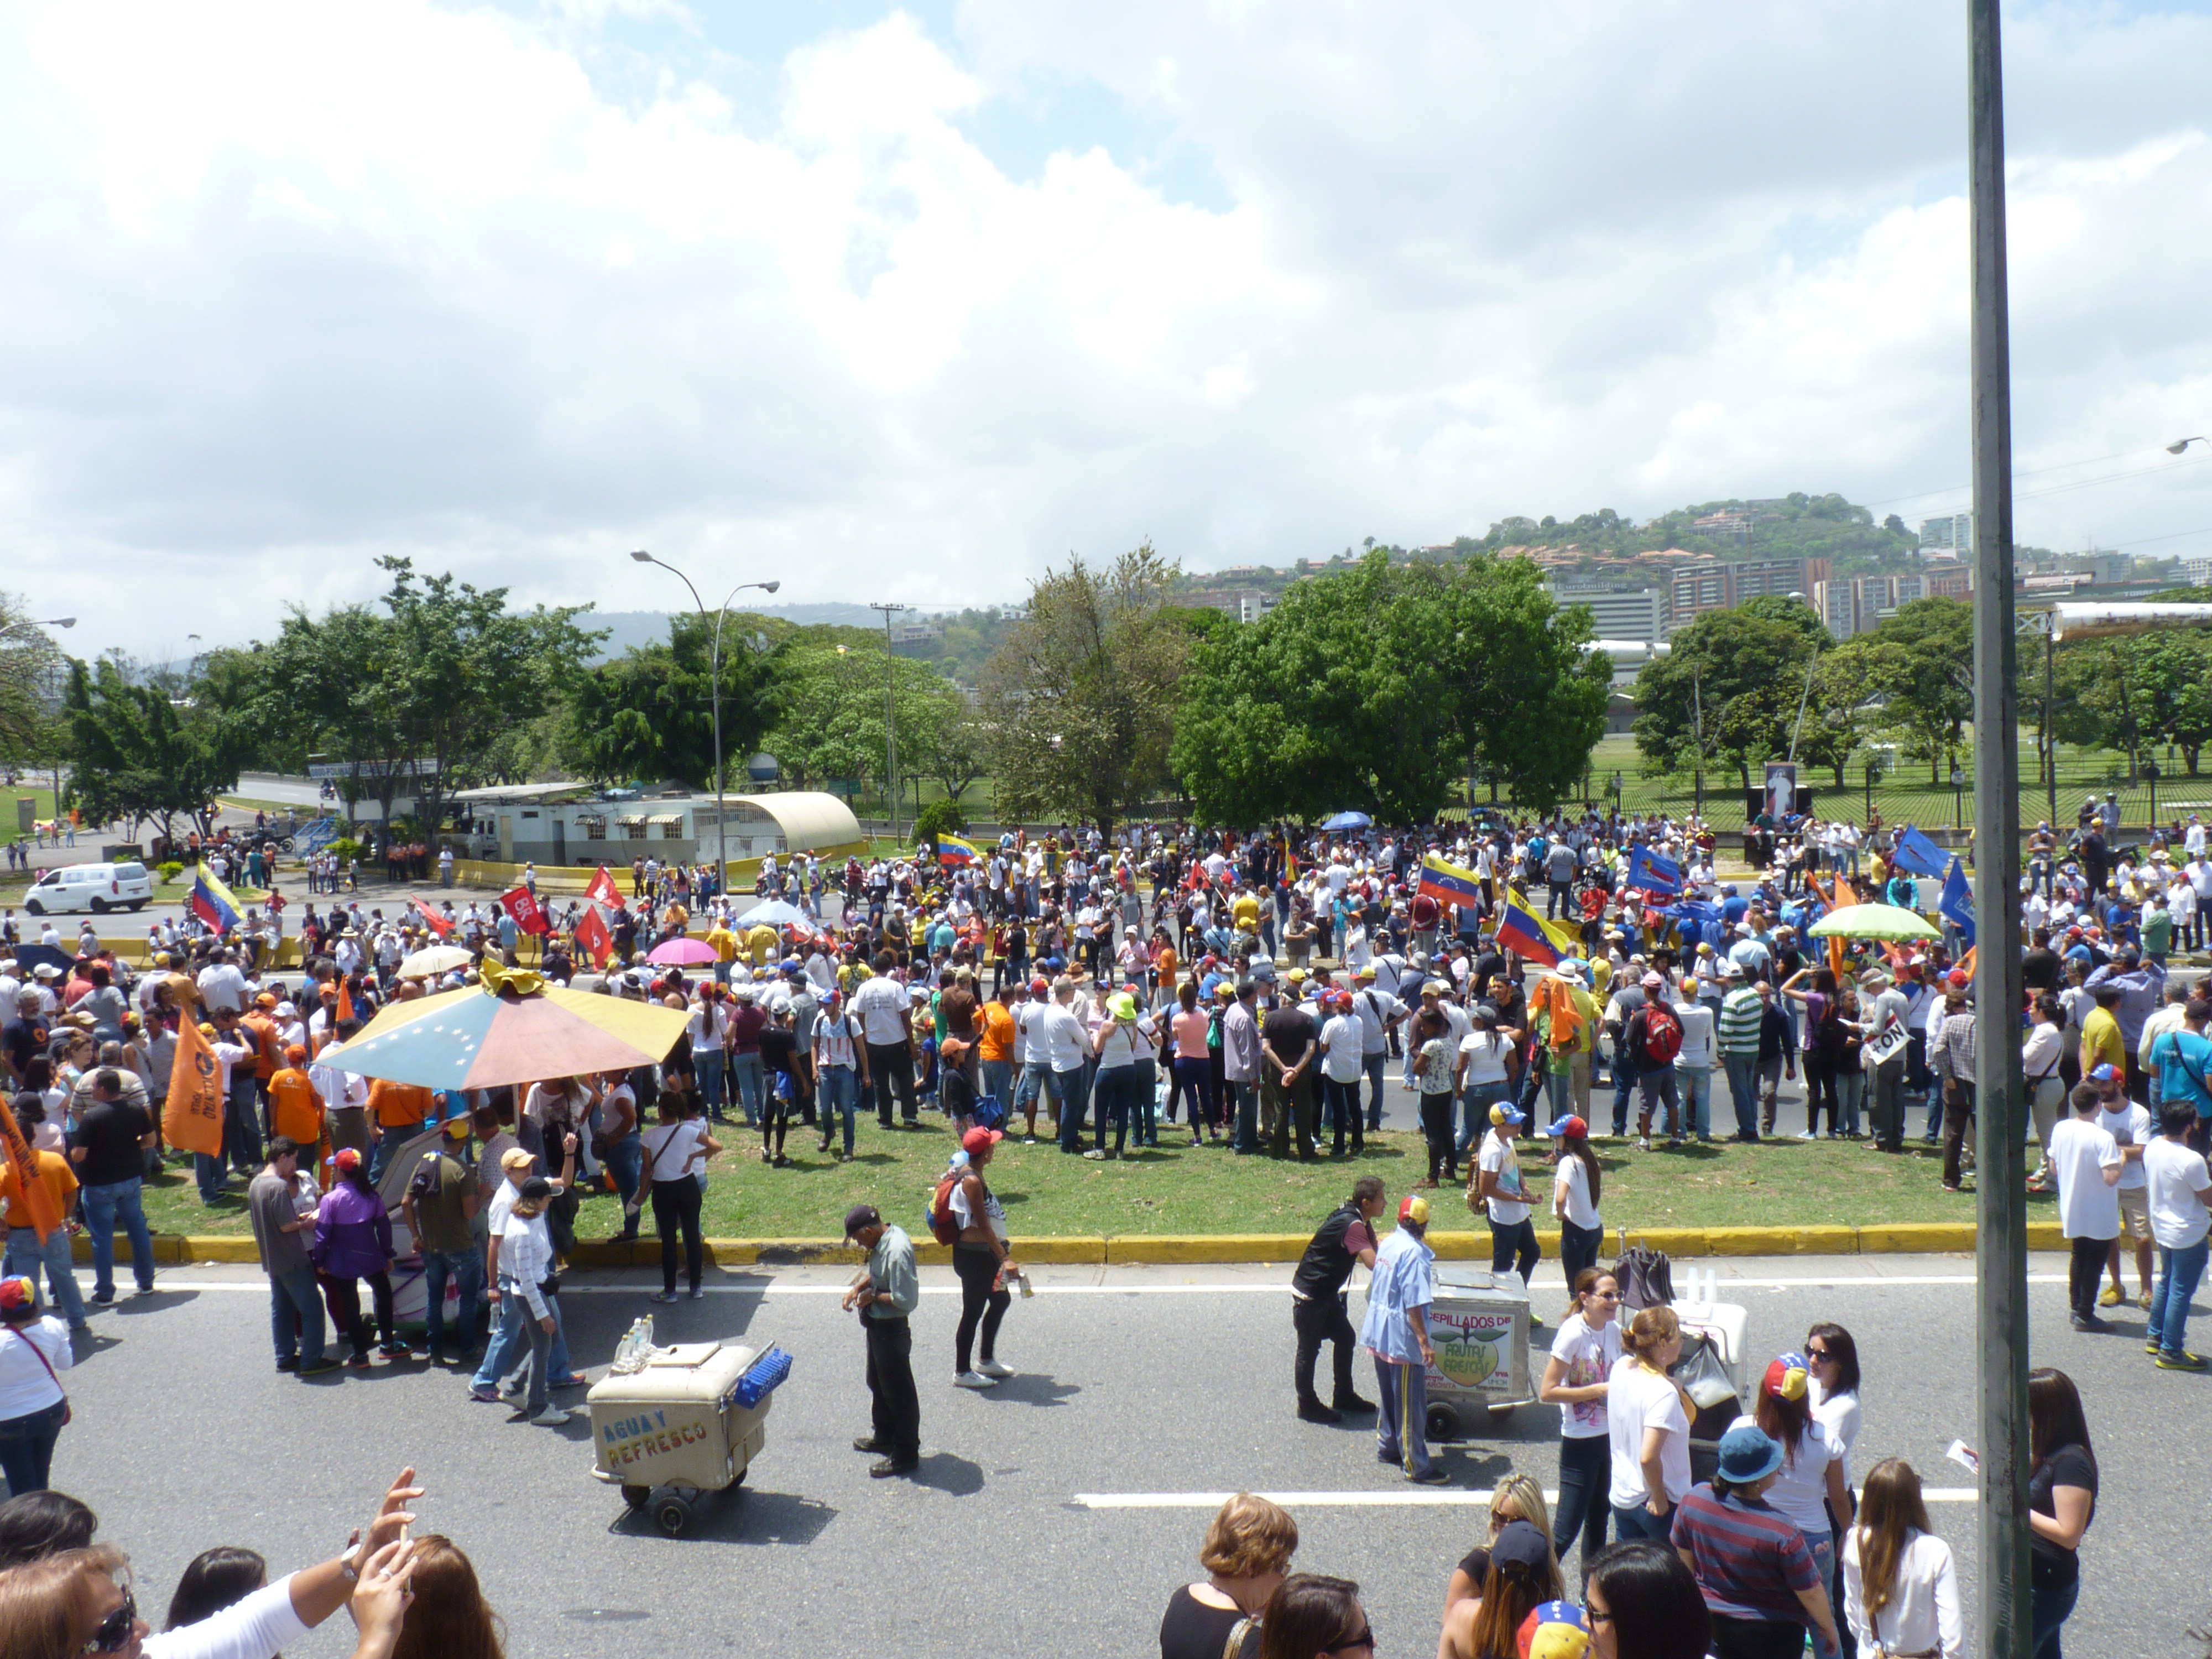 La marcha convocada por la MUD para este #24jun, dio inicio en horas de la mañana donde seguidores de la oposición venezolana asistieron a las calles de Caracas, exigiendo una Venezuela libre/ Foto: Lewin Granados